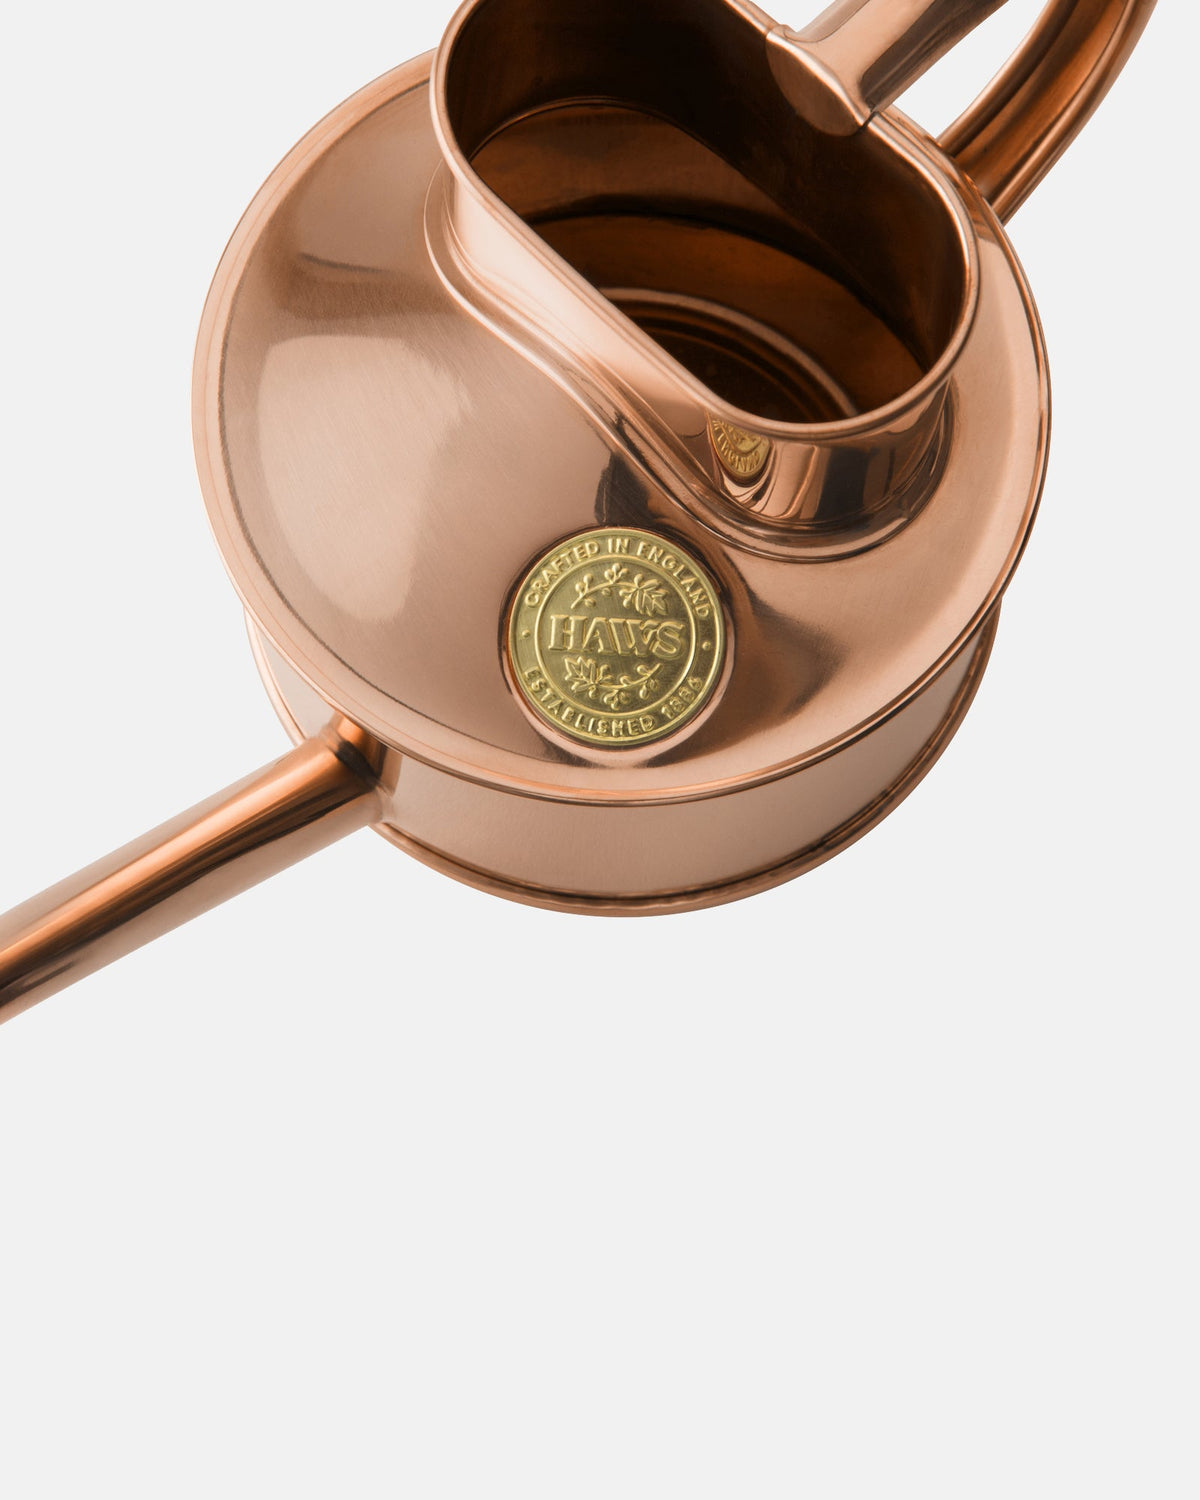 Copper Indoor Pot Waterer - BRIT LOCKER